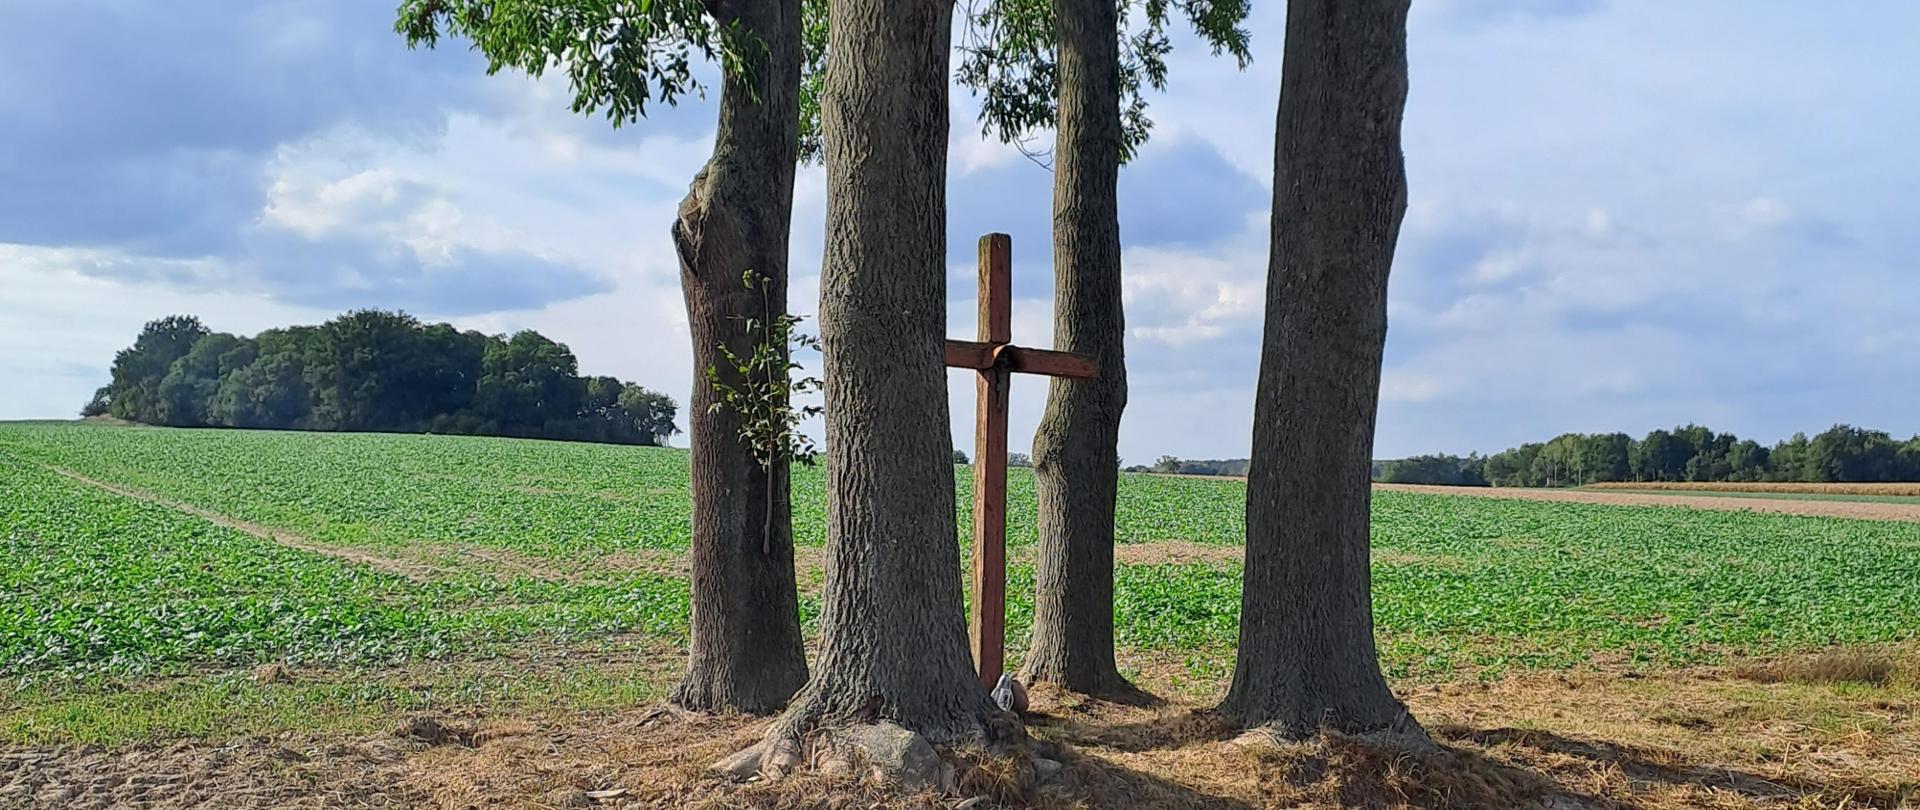 Krzyż stojący pomiędzy czterema drzewami